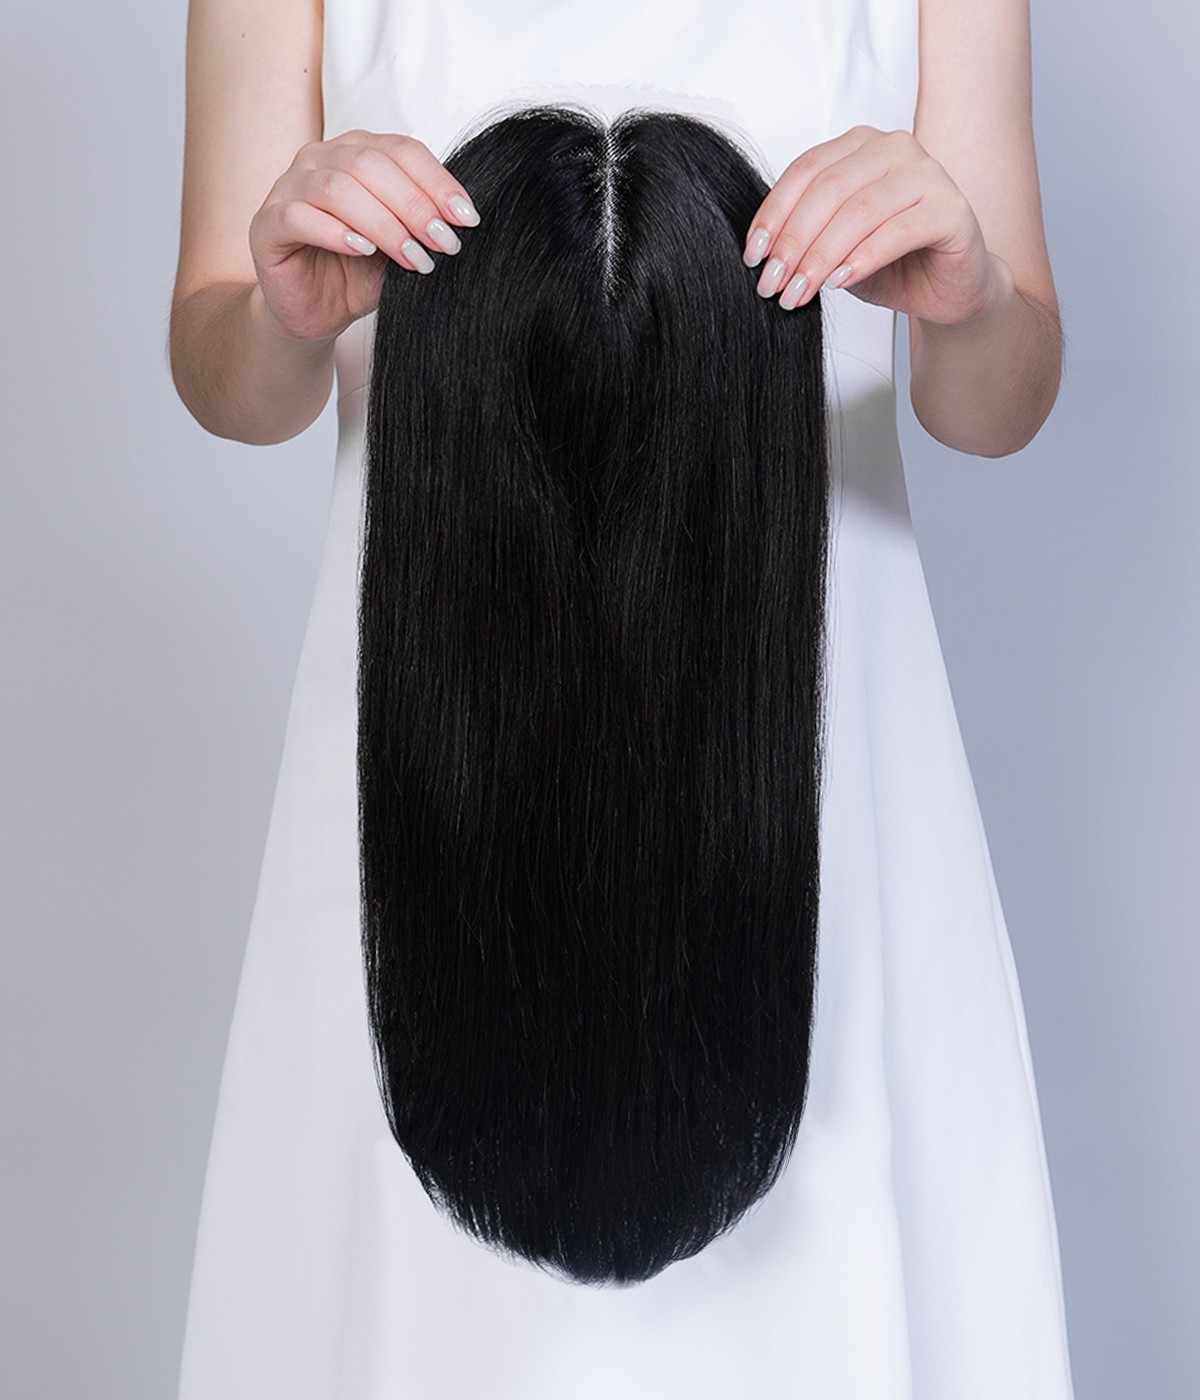 6"x6" Mono Top Human Hair Topper | Hair Pieces for Women Thinning Hair or Hair Loss 